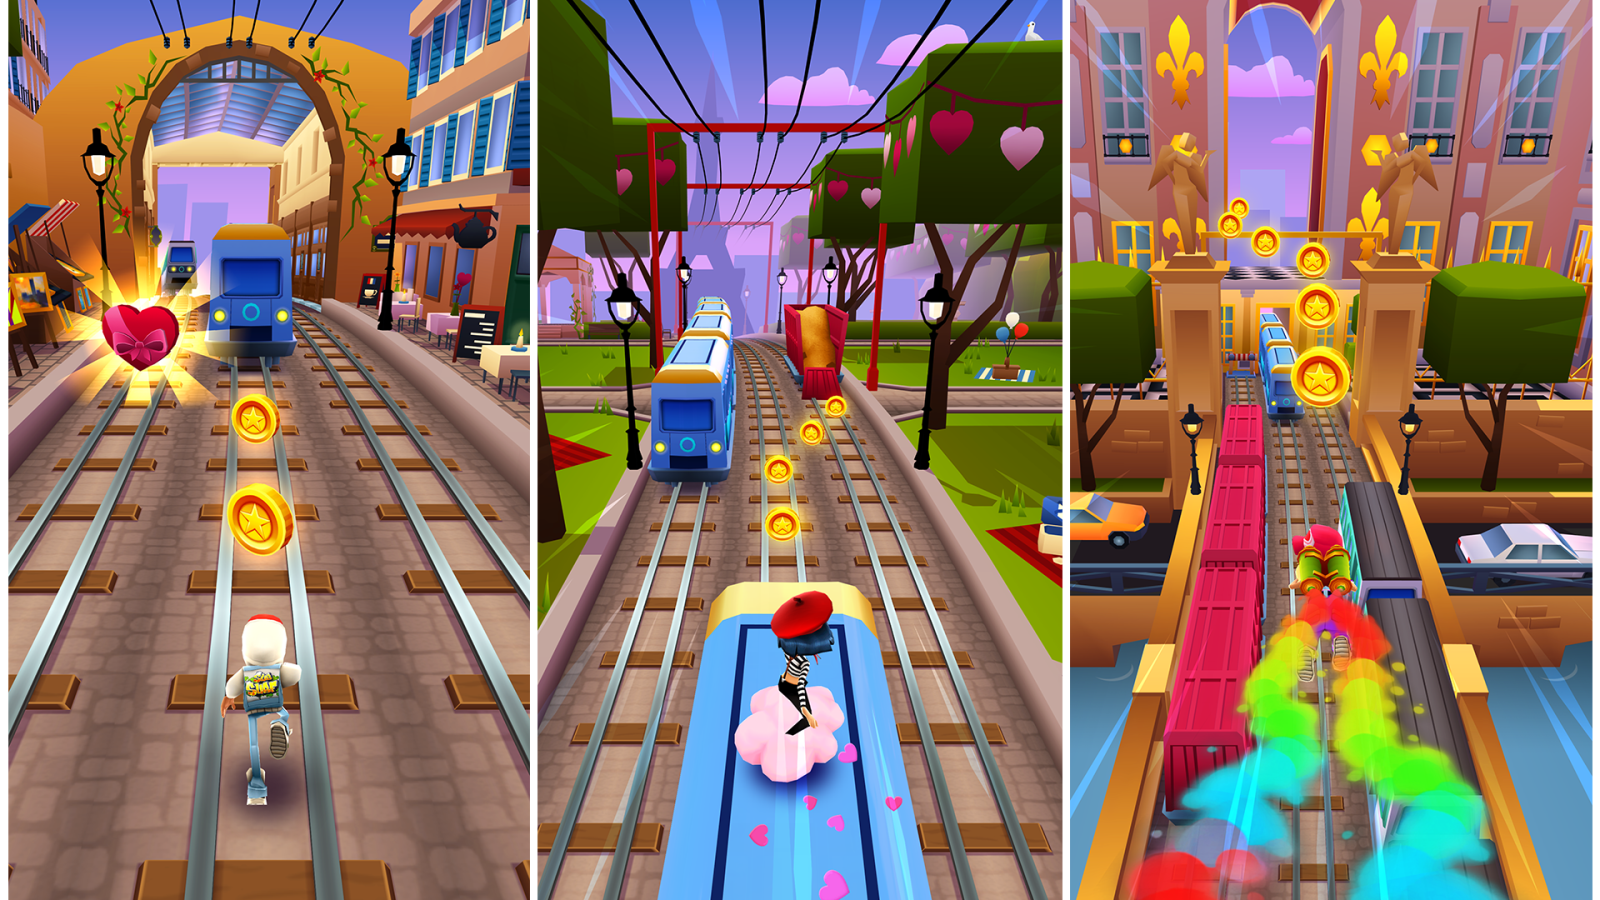 Game Subway Surfers mang đến cho người chơi những trải nghiệm thú vị